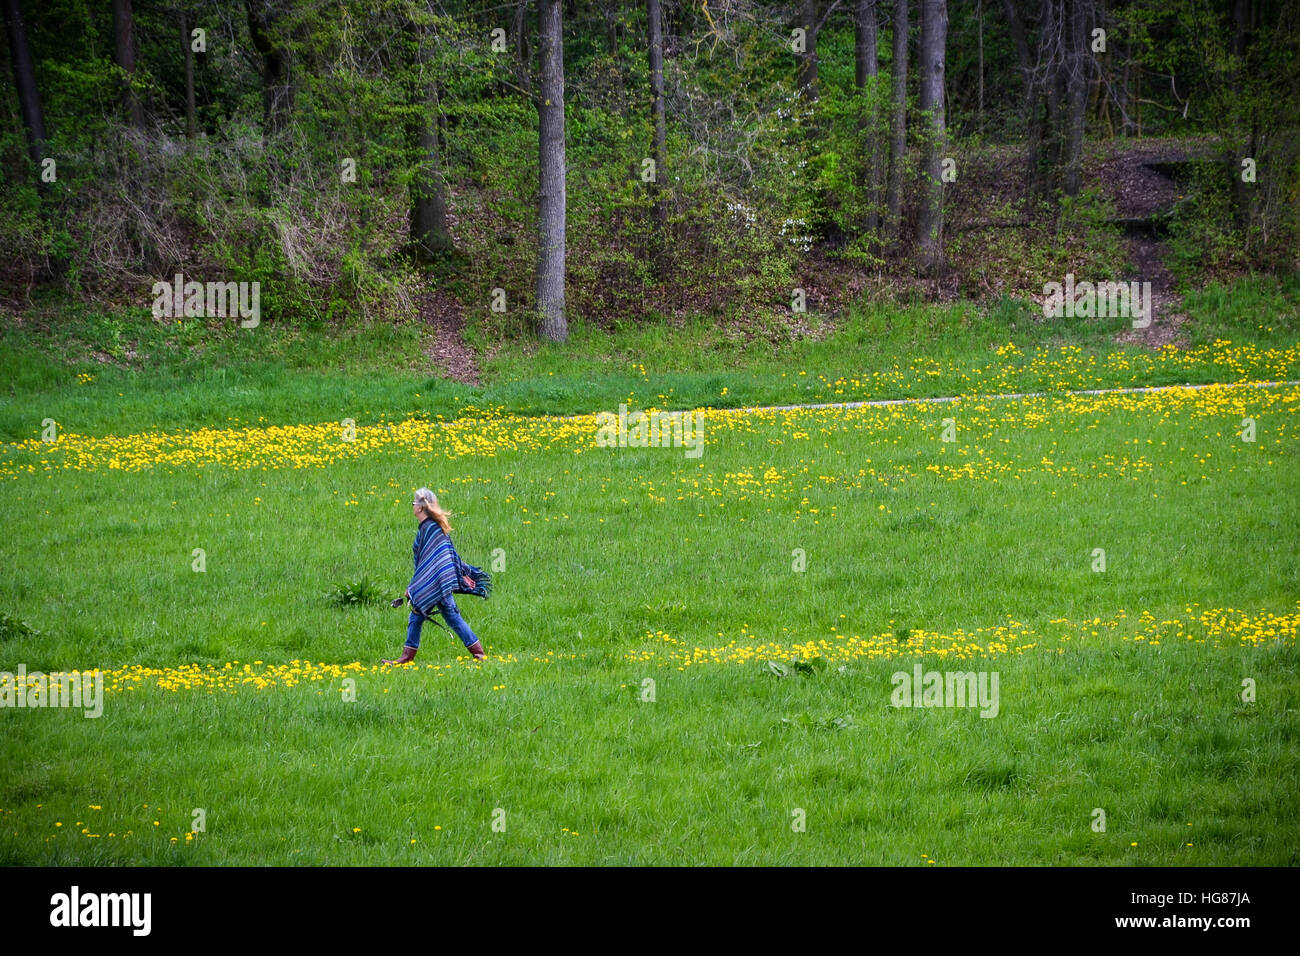 Hippie woman dressed in blue, walking on a green field Stock Photo